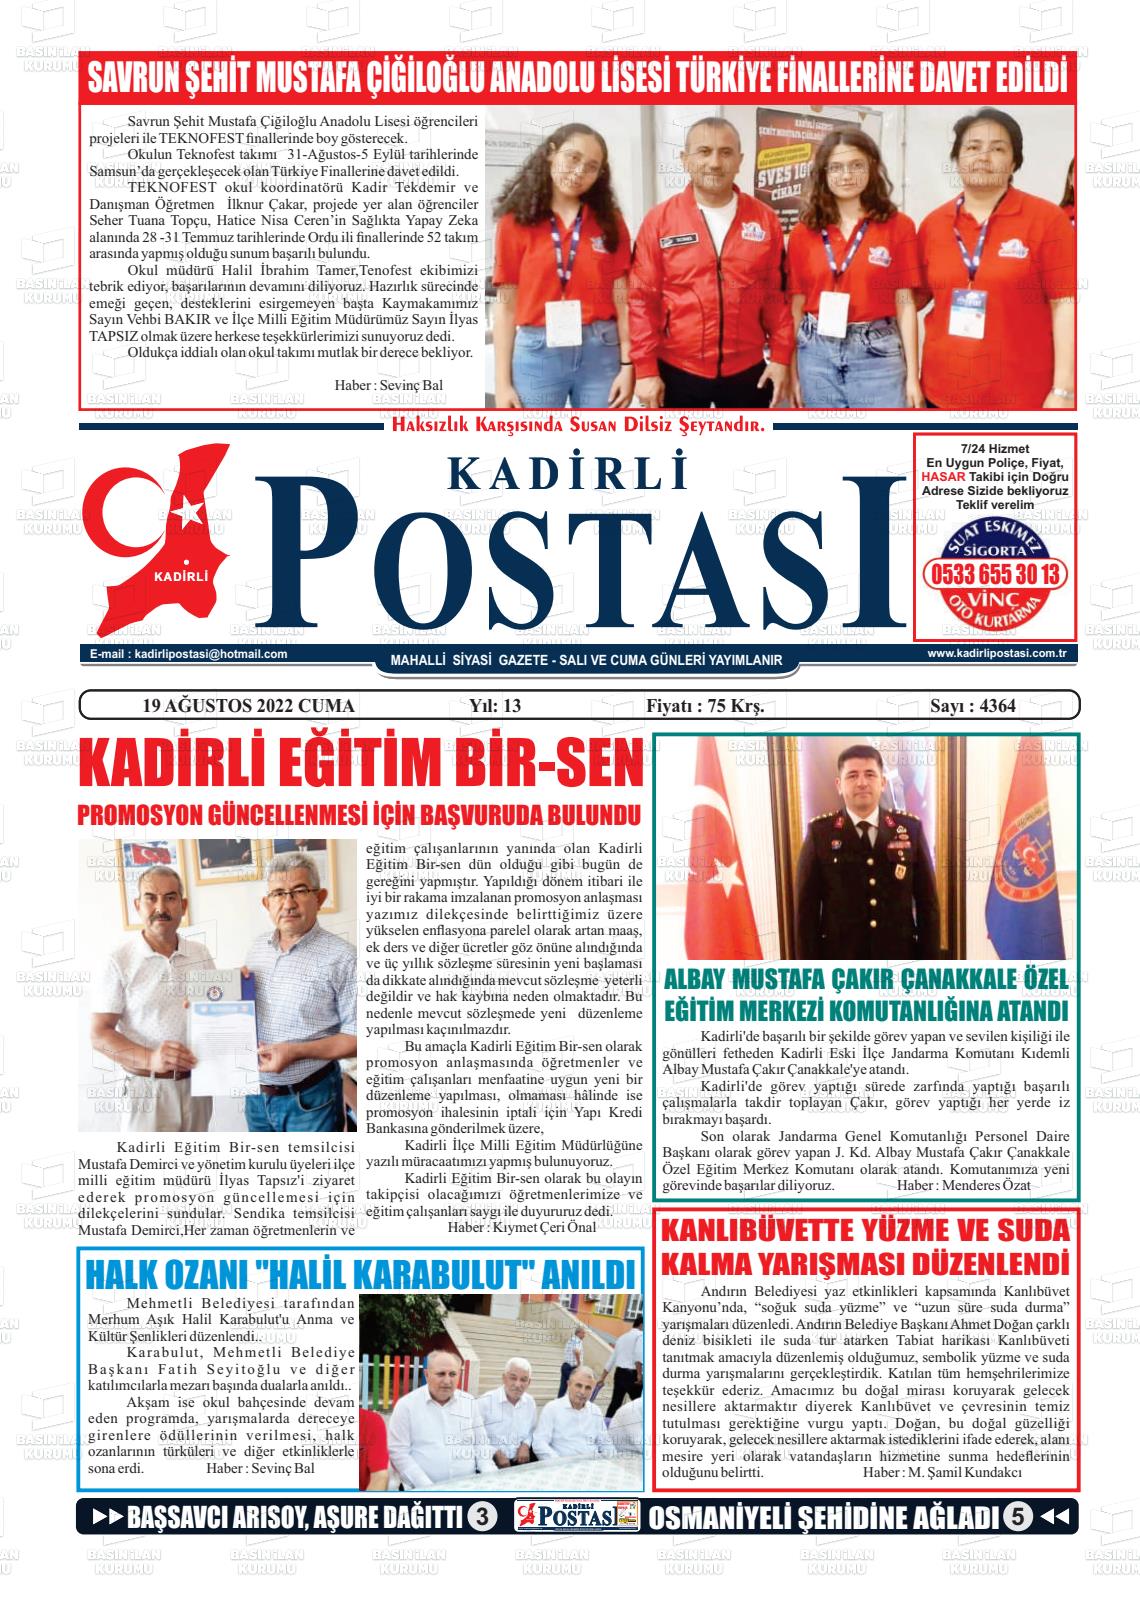 19 Ağustos 2022 Kadirli Postası Gazete Manşeti